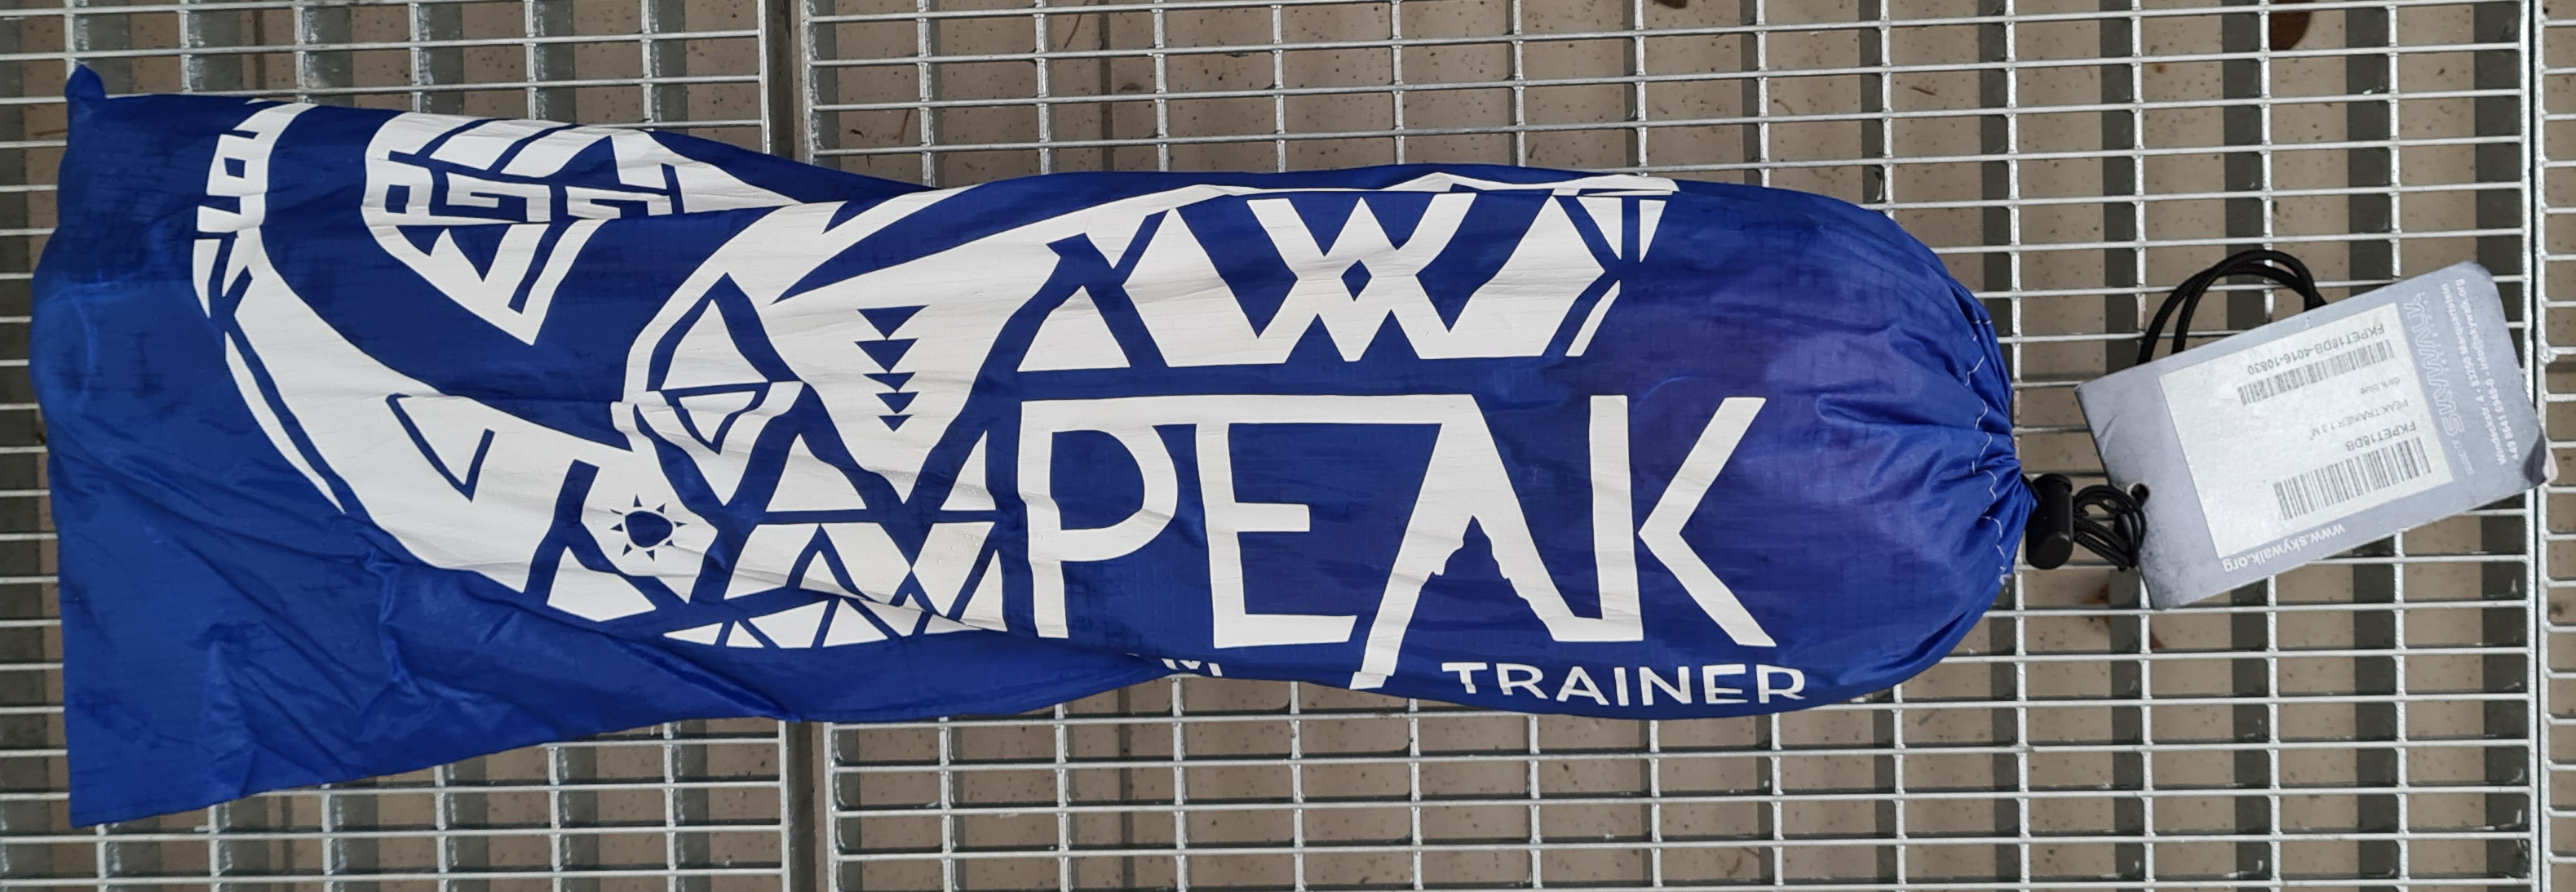 Softkite Peak 1.3m - Trainerkite, Trainingskite, Kite gebraucht